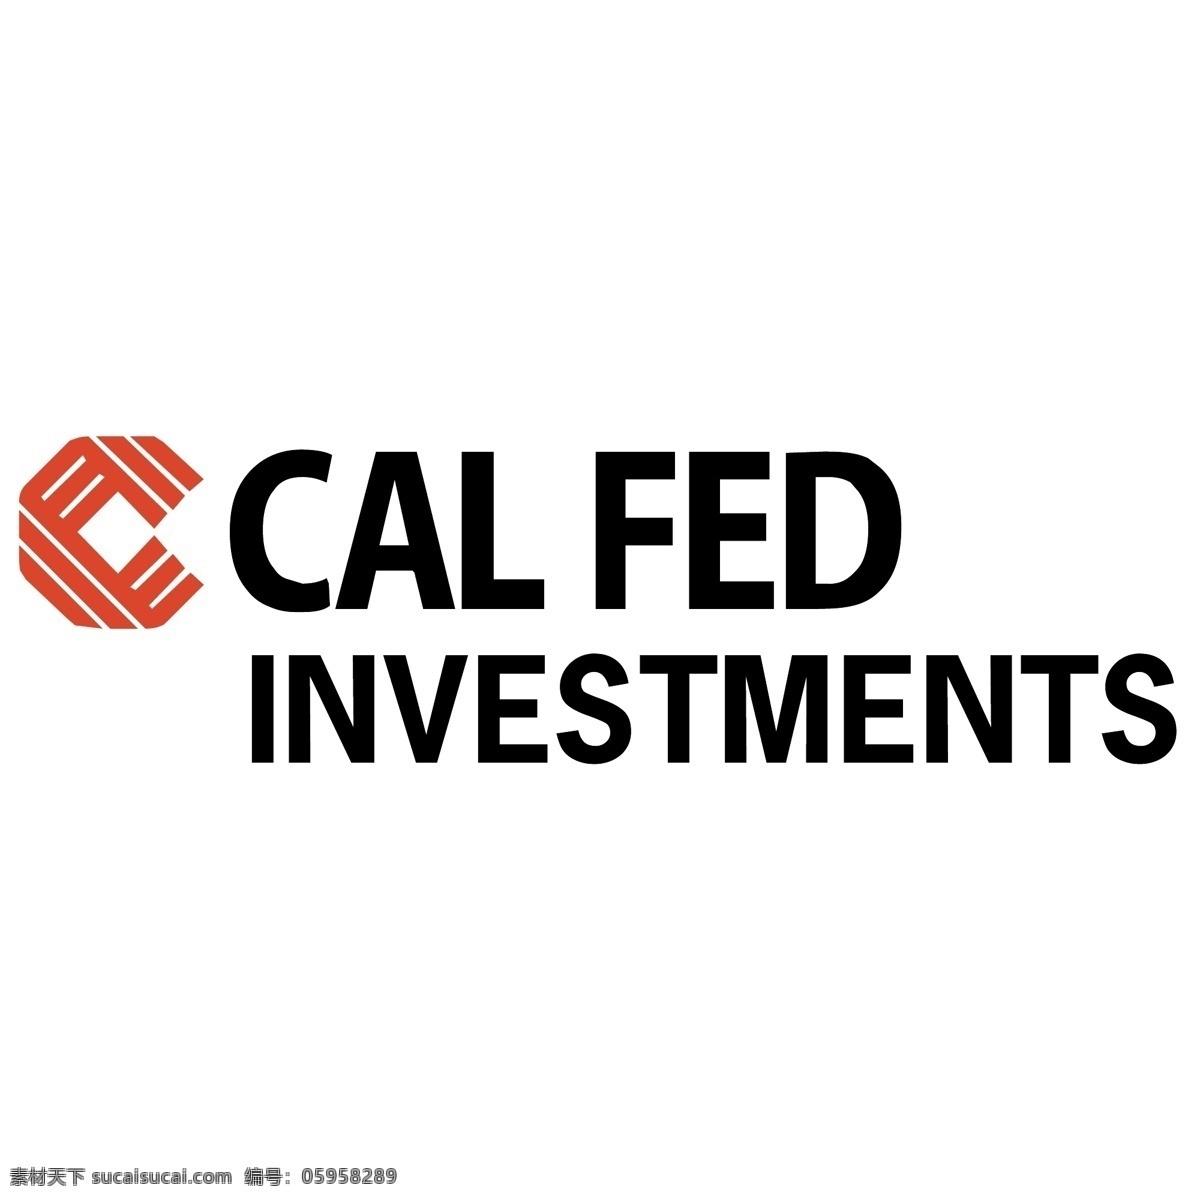 加州 联邦 投资 免费 cal 联储 标志 标识 psd源文件 logo设计